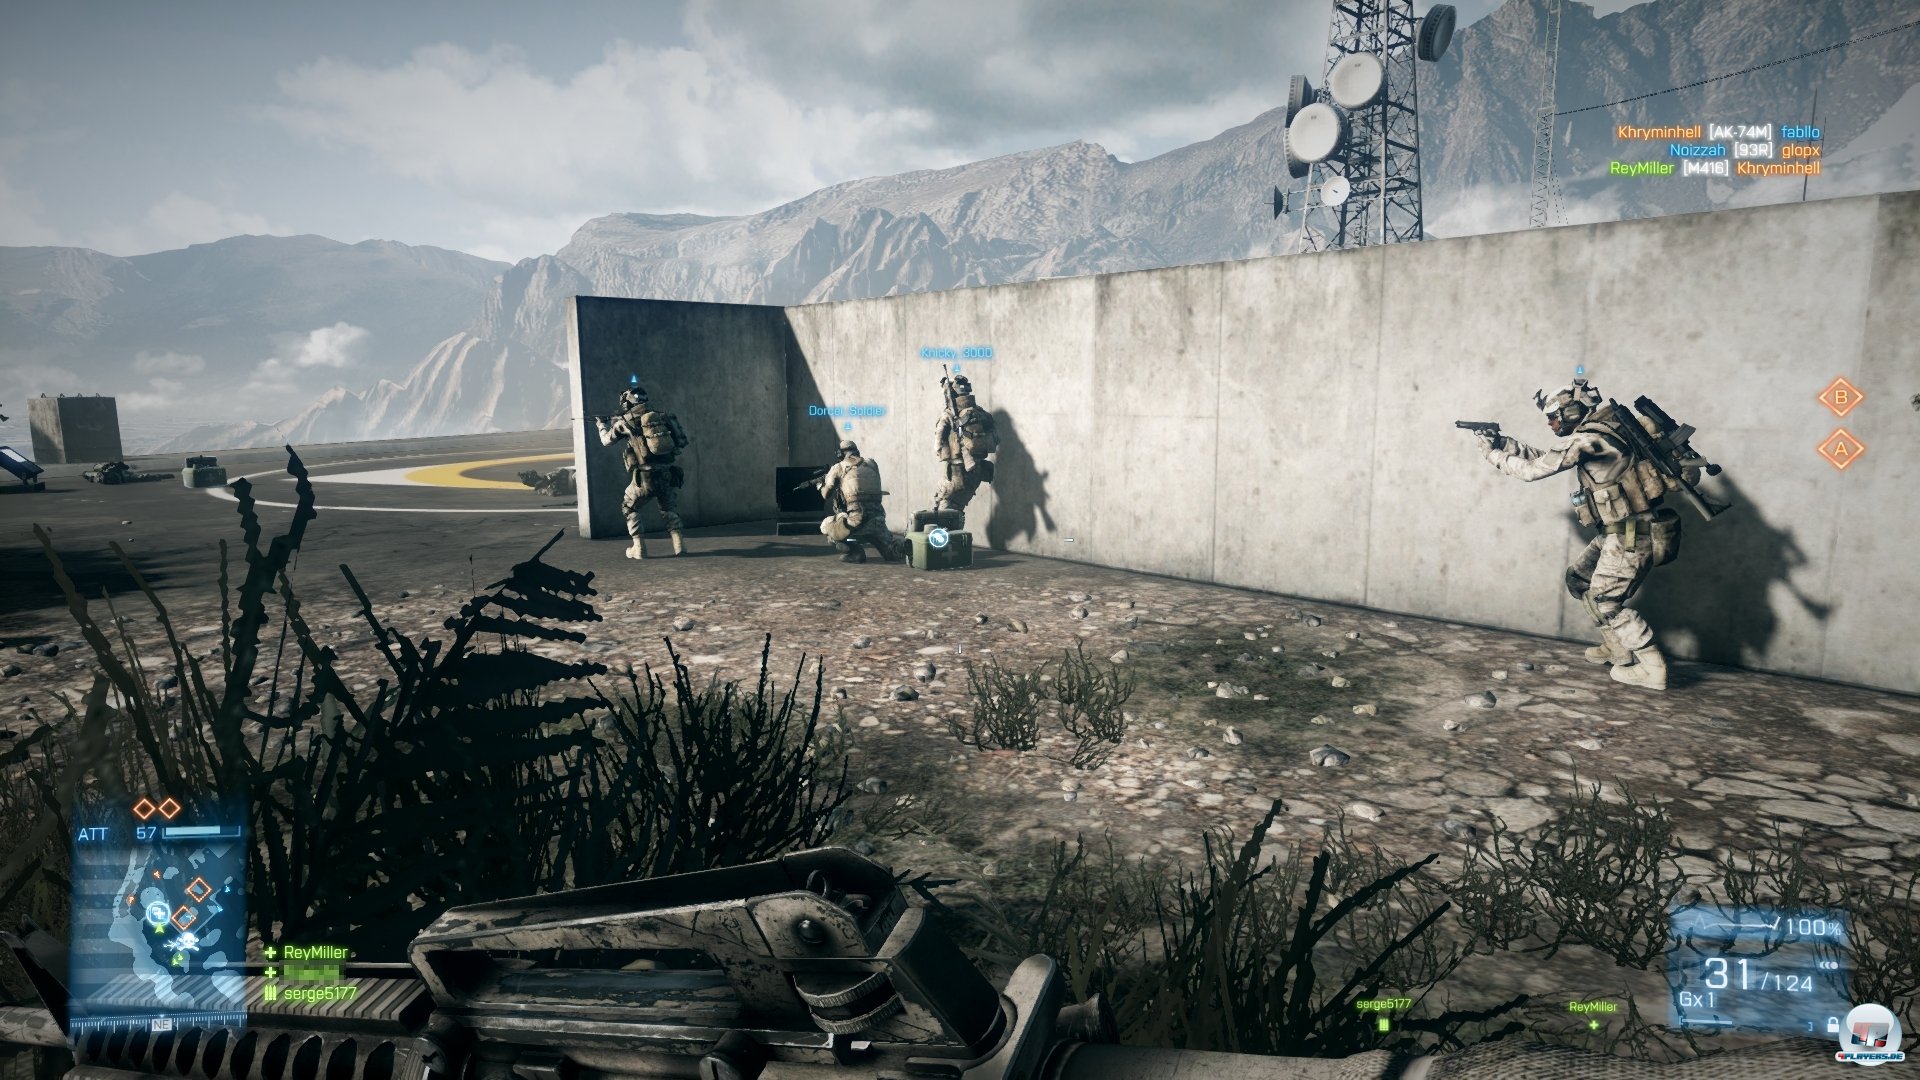 Teamarbeit steht wie immer bei Battlefield im Vordergrund - Solokmpfer haben hier keine Chance. Auer natrlich im Deathmatch-Modus.